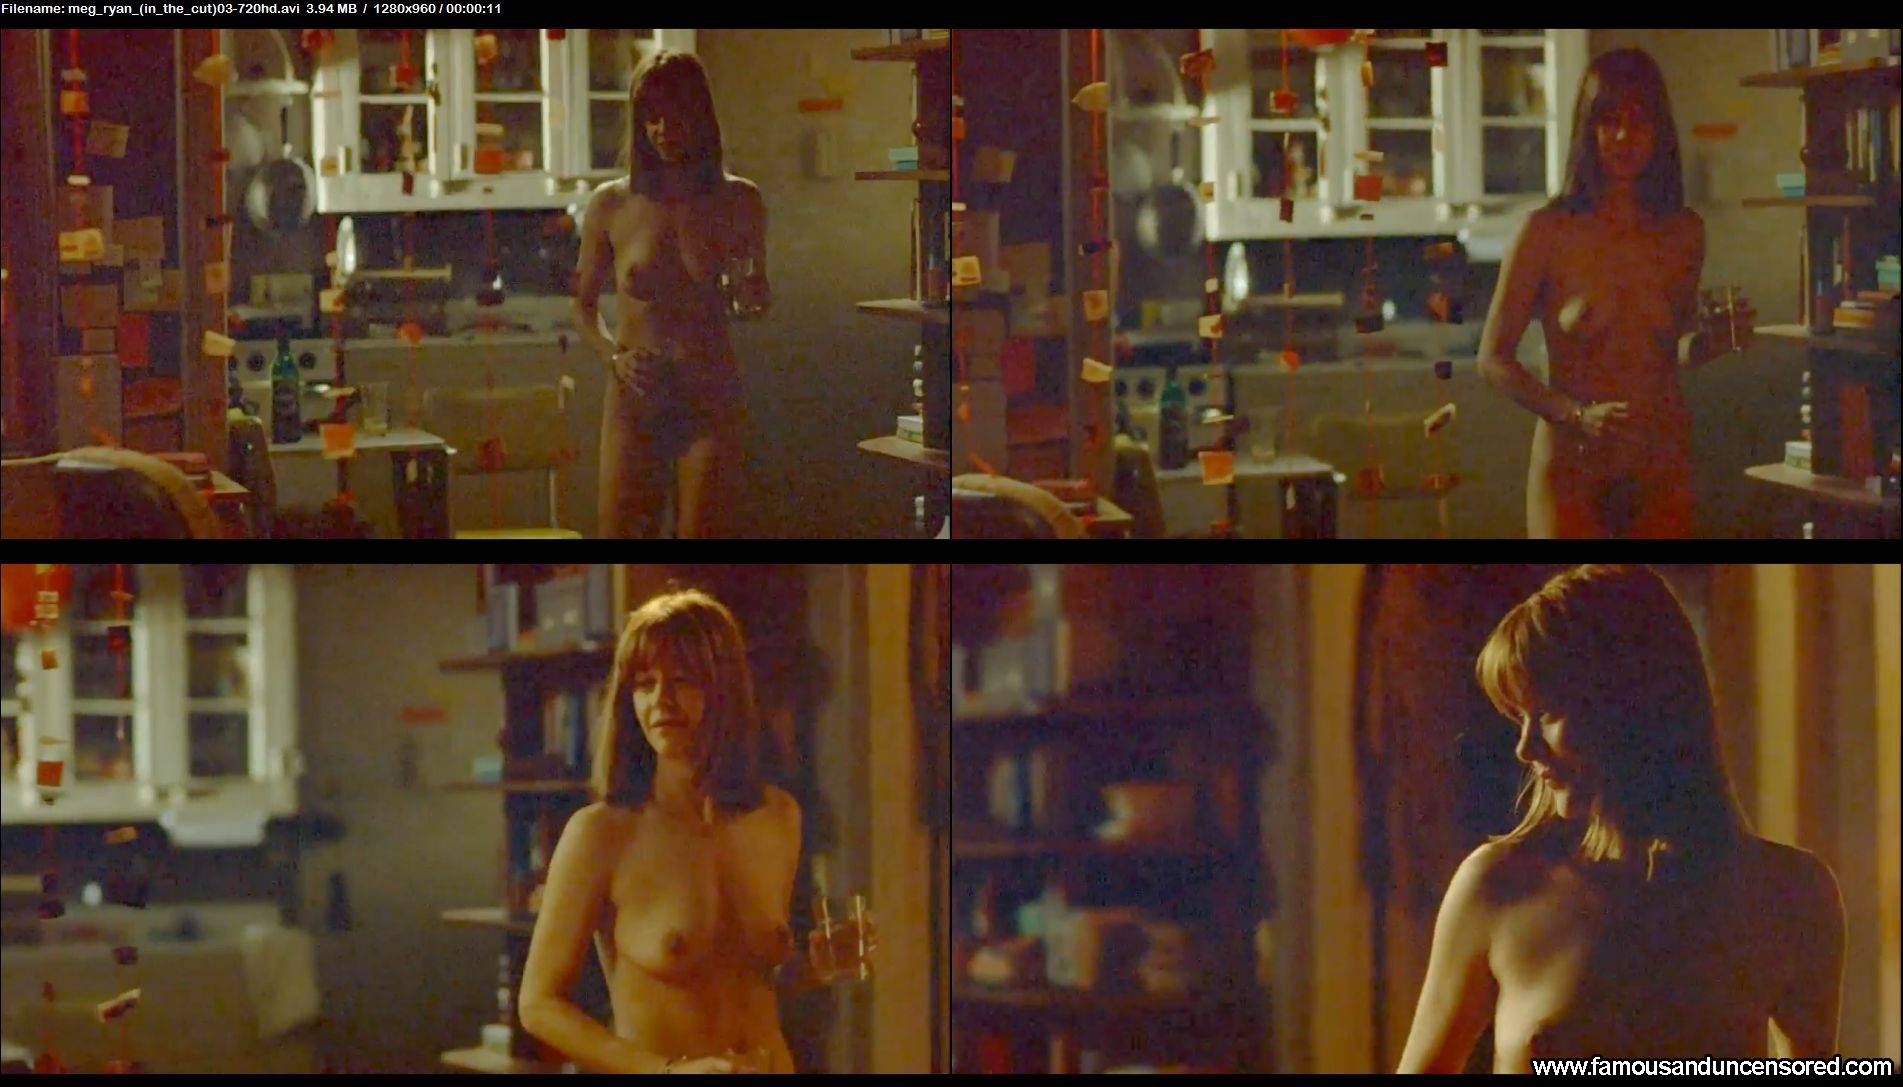 Meg ryan topless